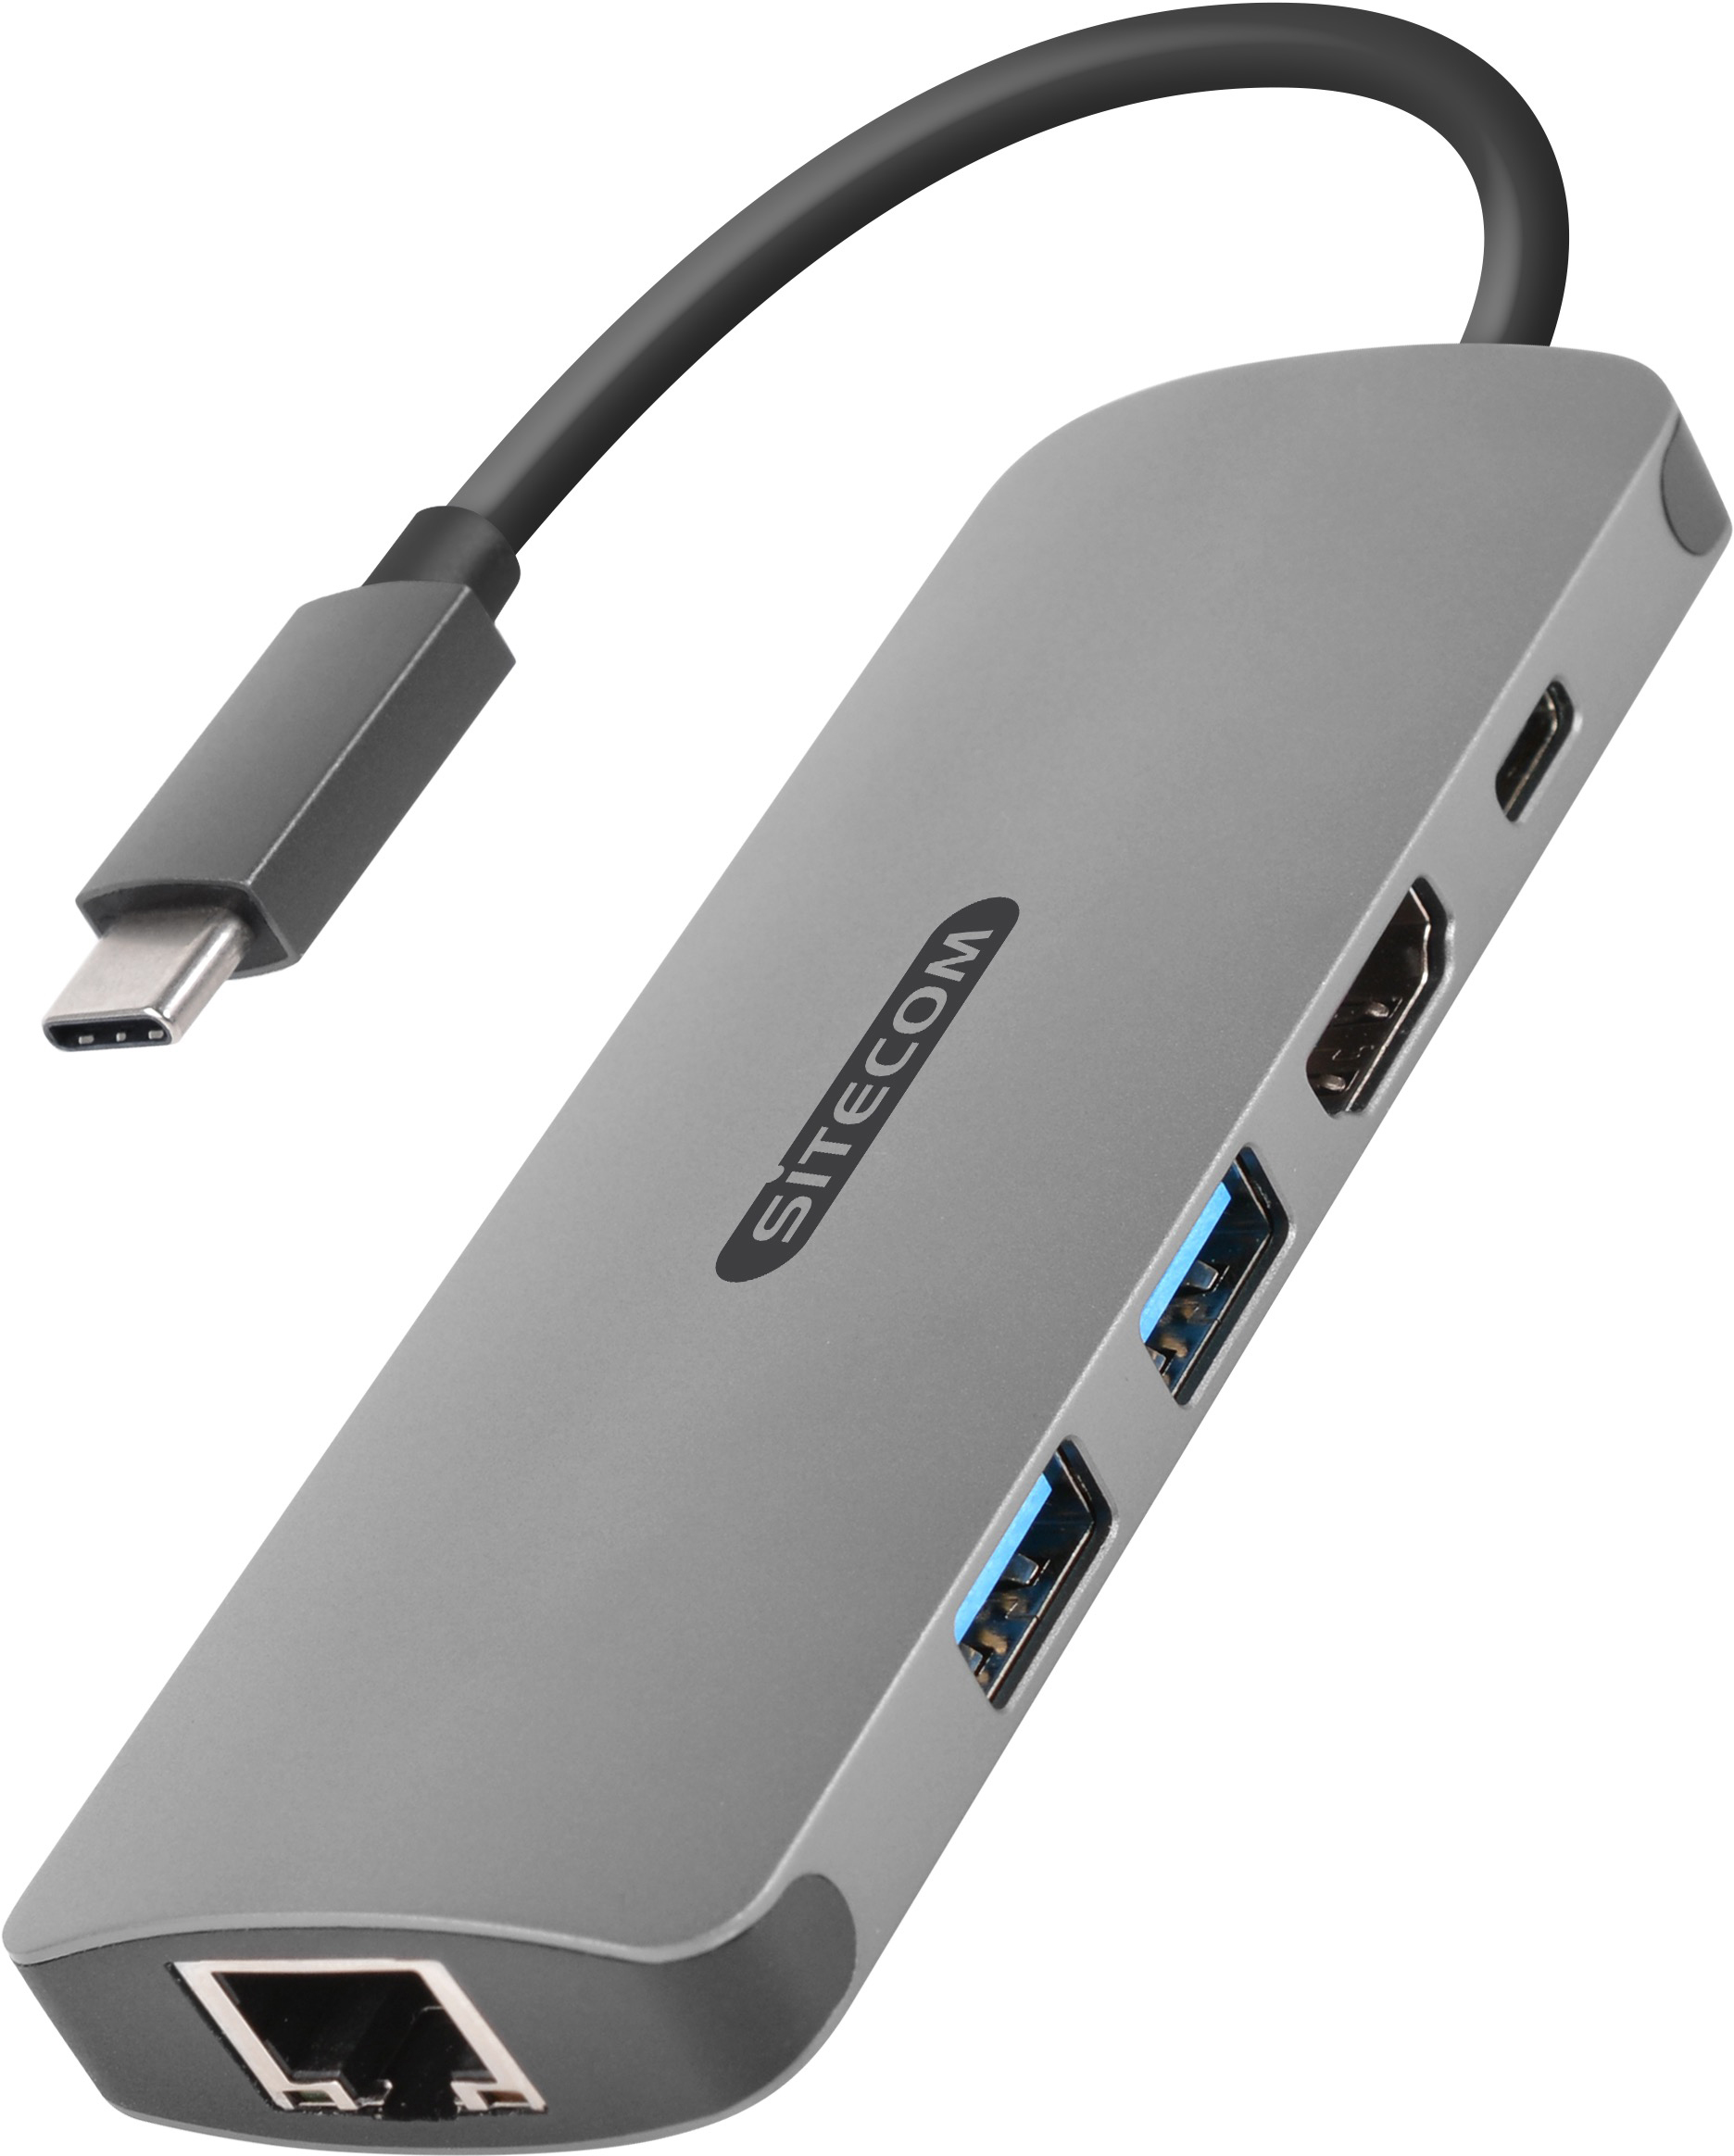 SITECOM USB-C to HDMI Adapter 1x GLAN CN-379 2x USB-A, 4K USB-C PD